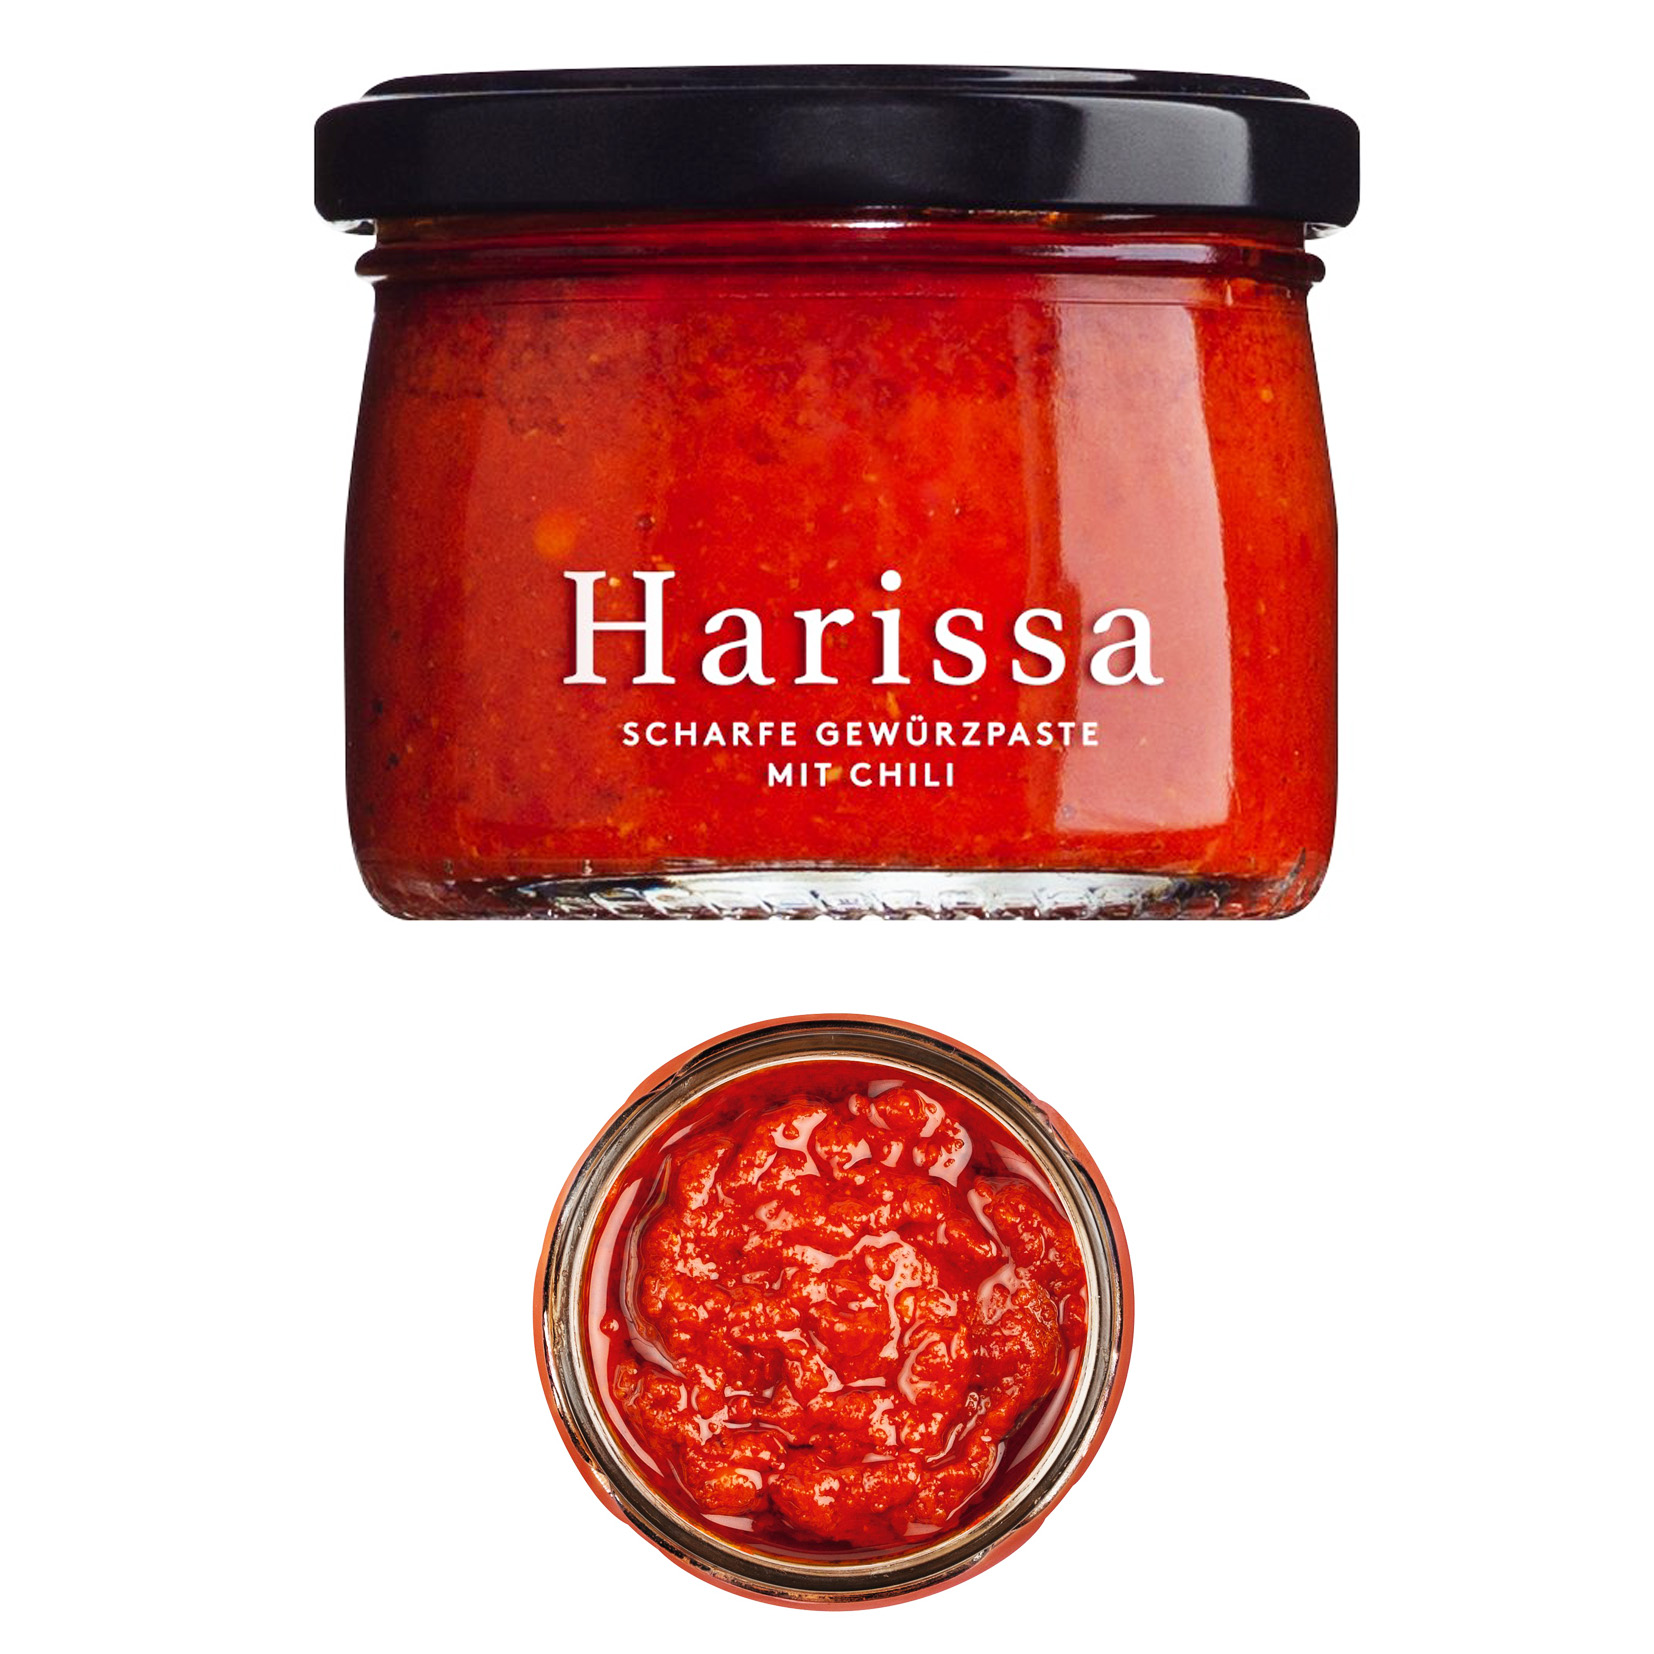 Harissa - scharfe Gewürzpaste mit Chili - hier online kaufen